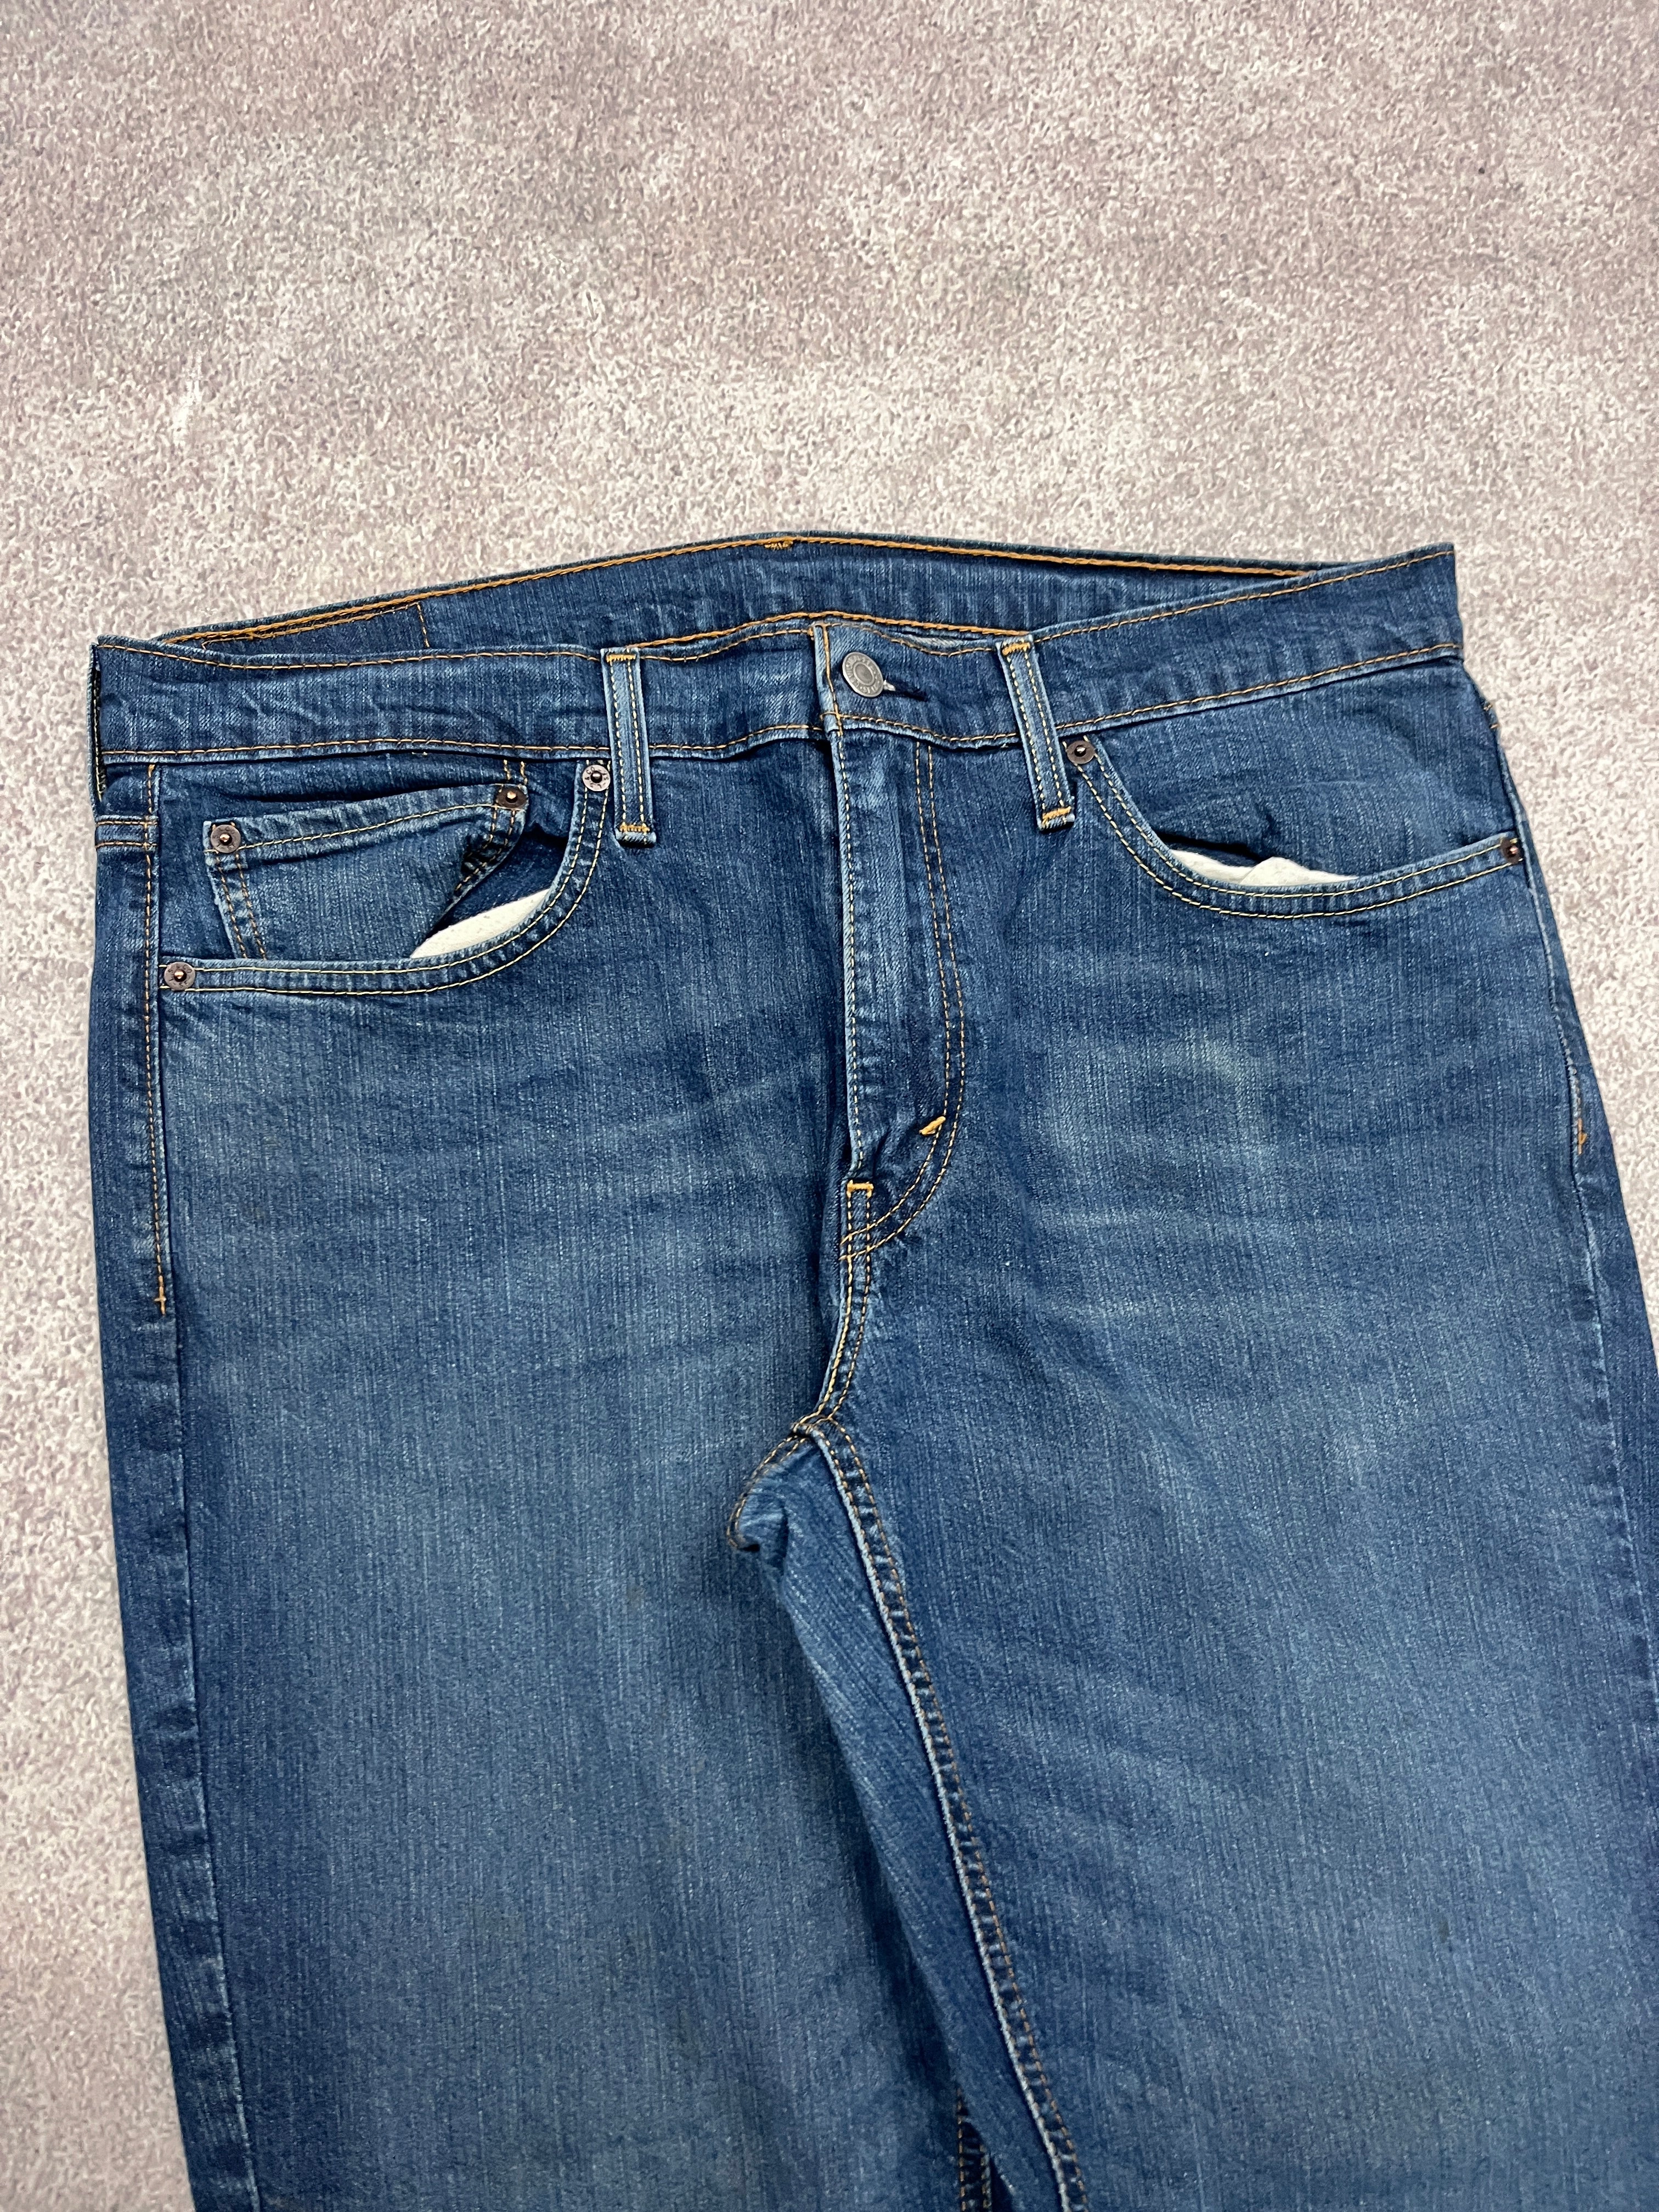 Vintage Levi 541 Denim Jeans Blue // W34 L32 - RHAGHOUSE VINTAGE